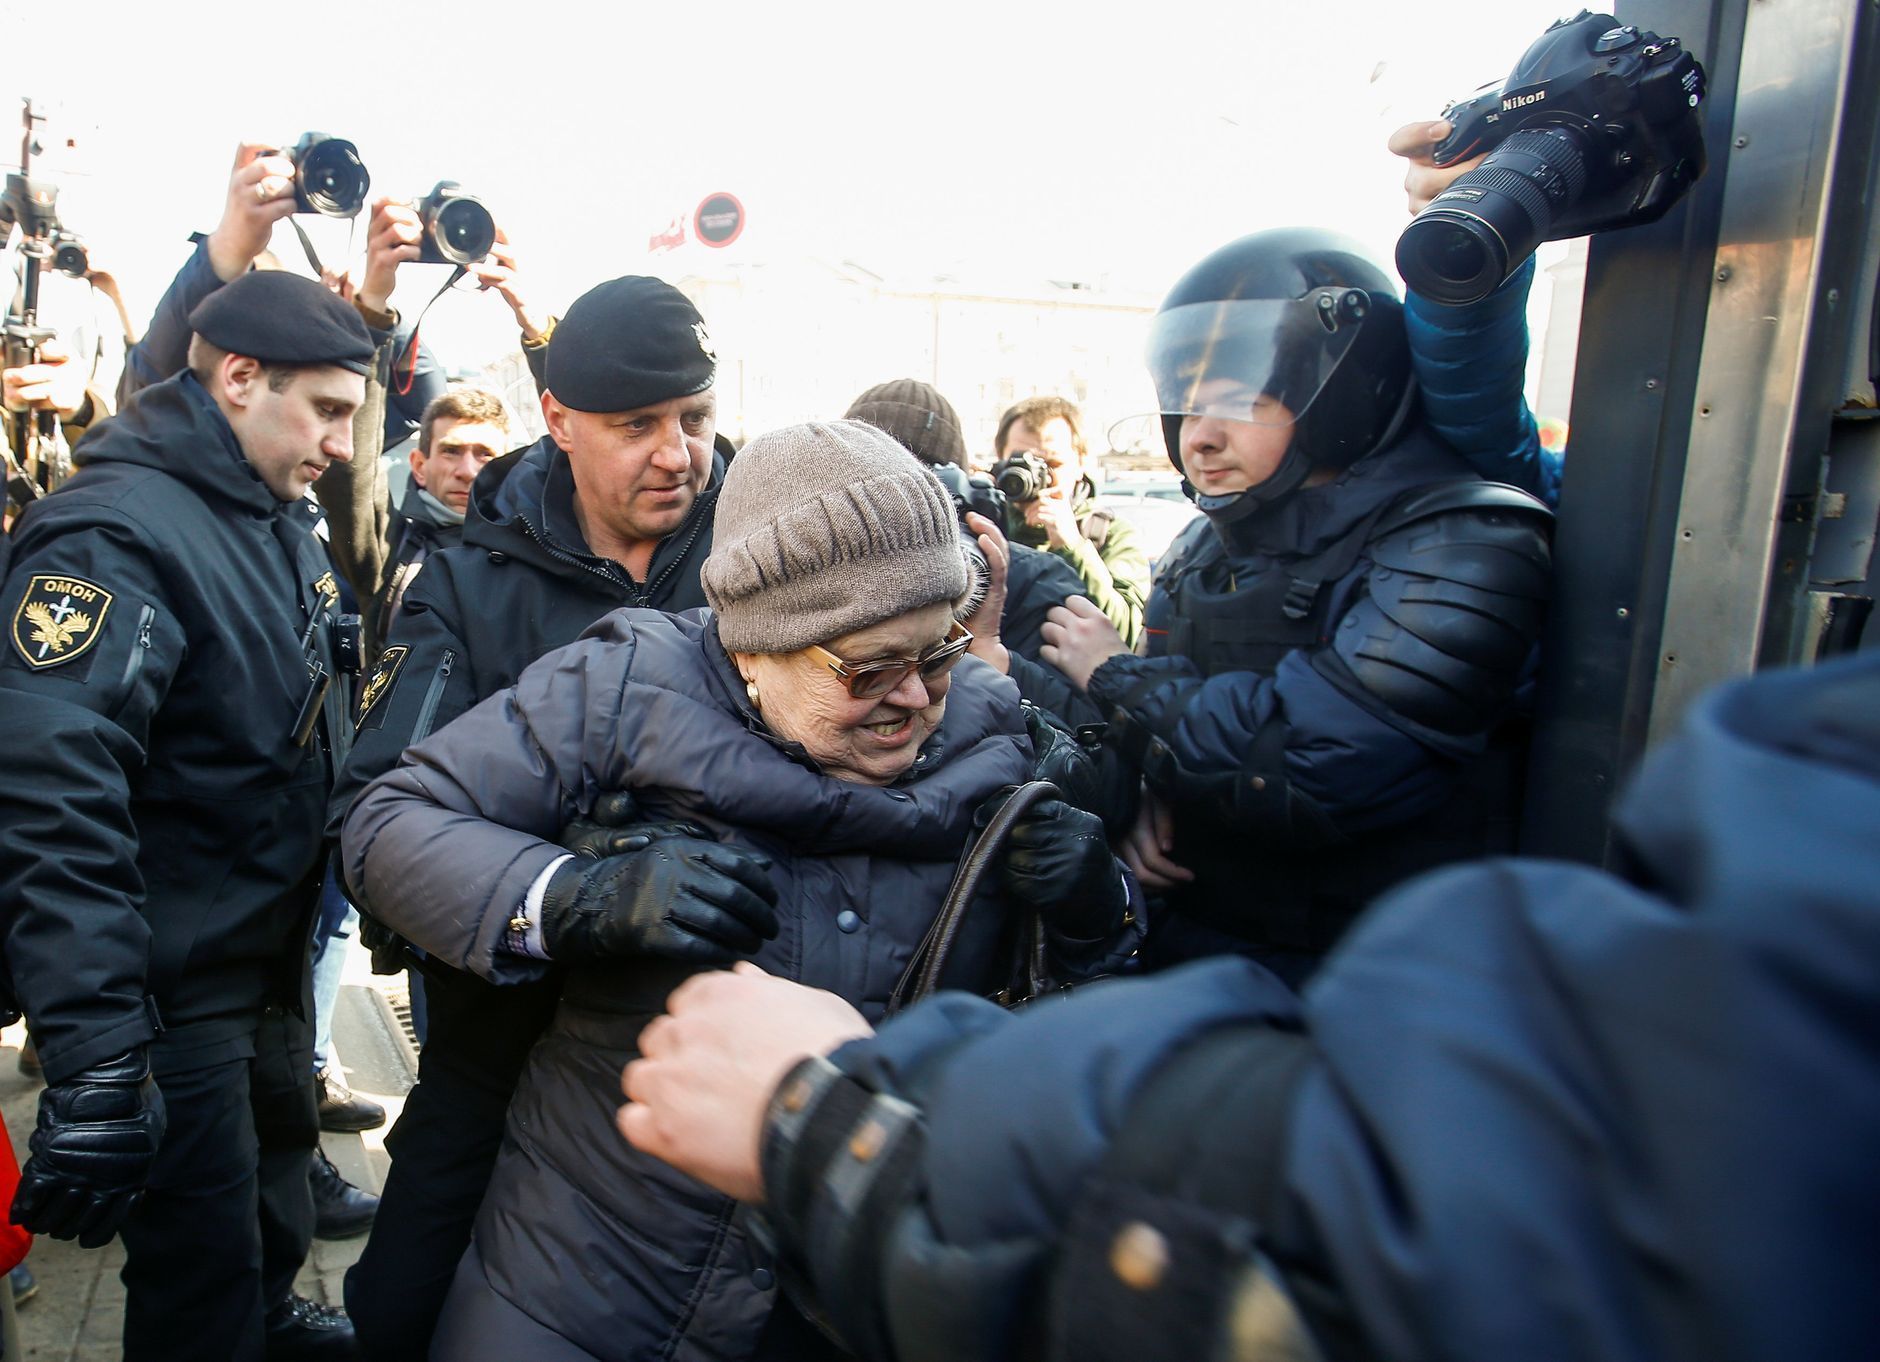 Pochod v Bělorusku, policejní zásah březen 2018